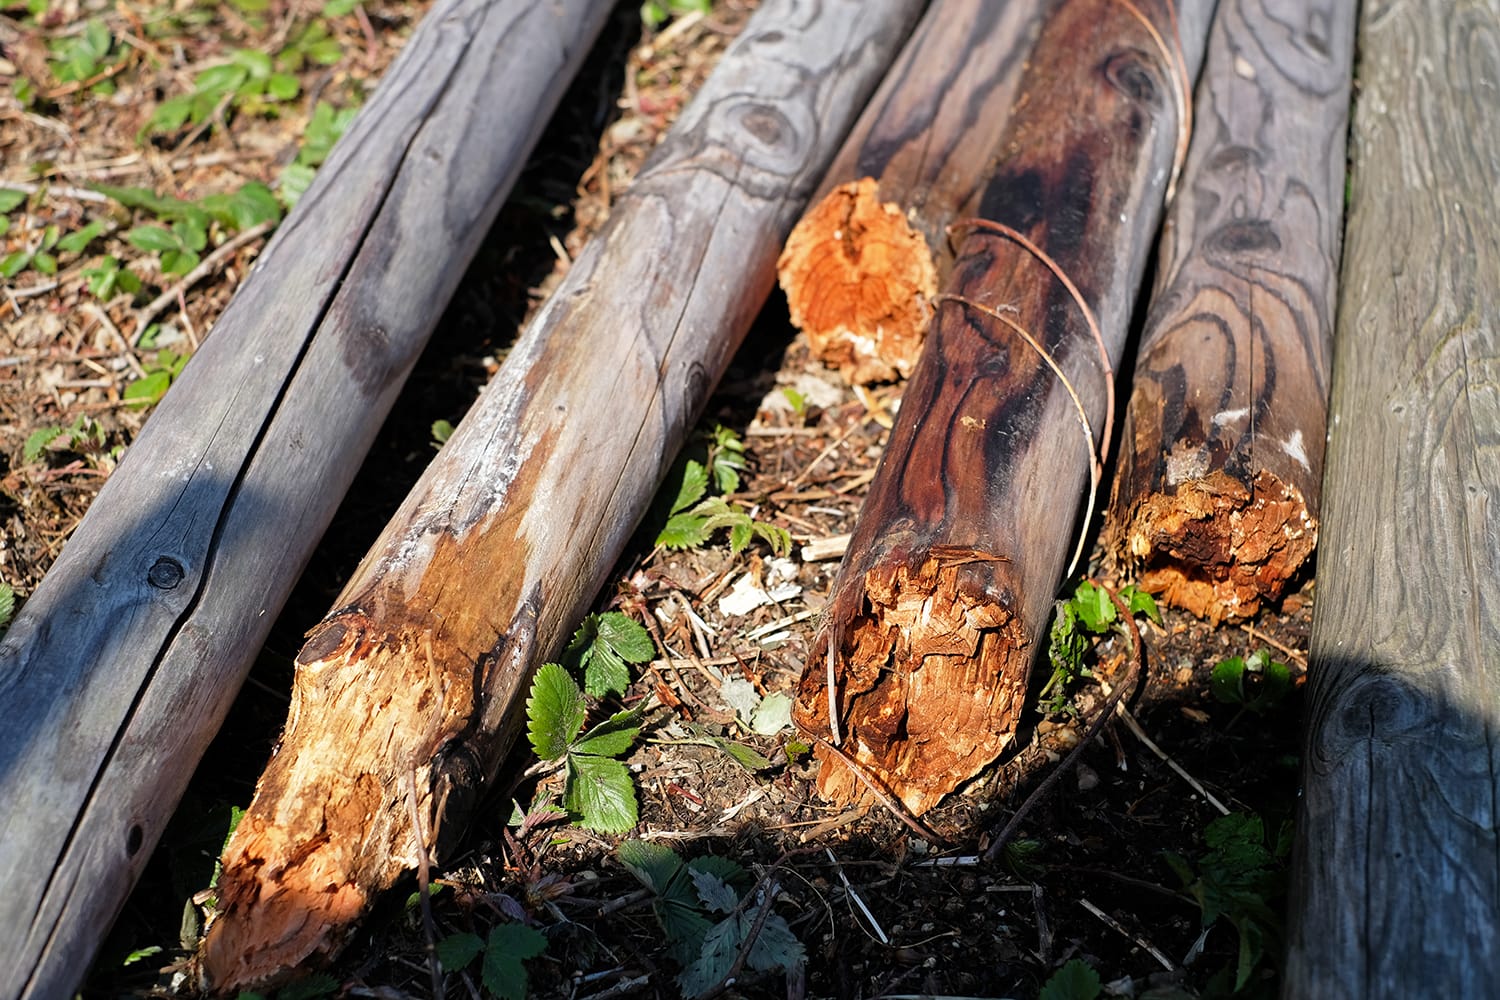 木材腐朽菌でボロボロになった焼き丸太の根元